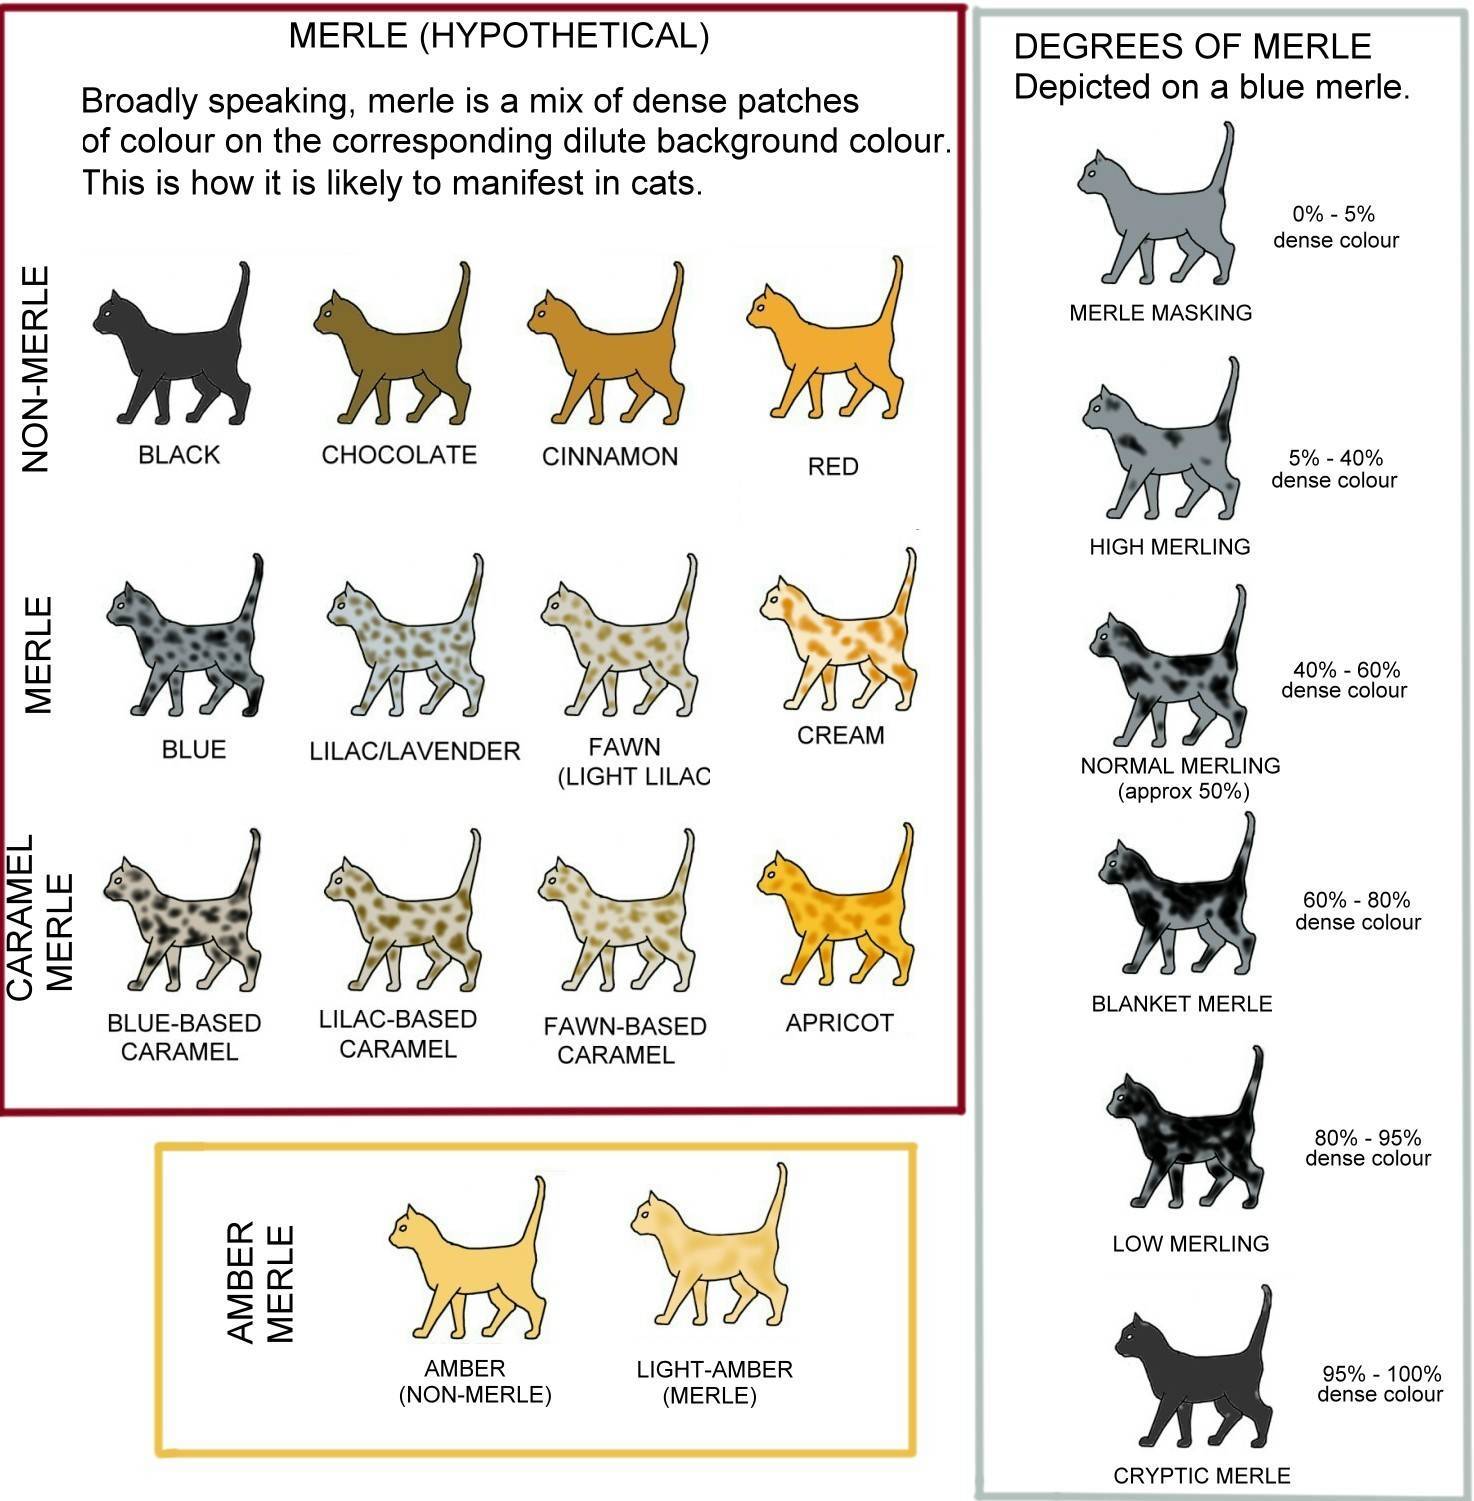 Окрасы кошек: описание с фото, история, генетика и кодировки